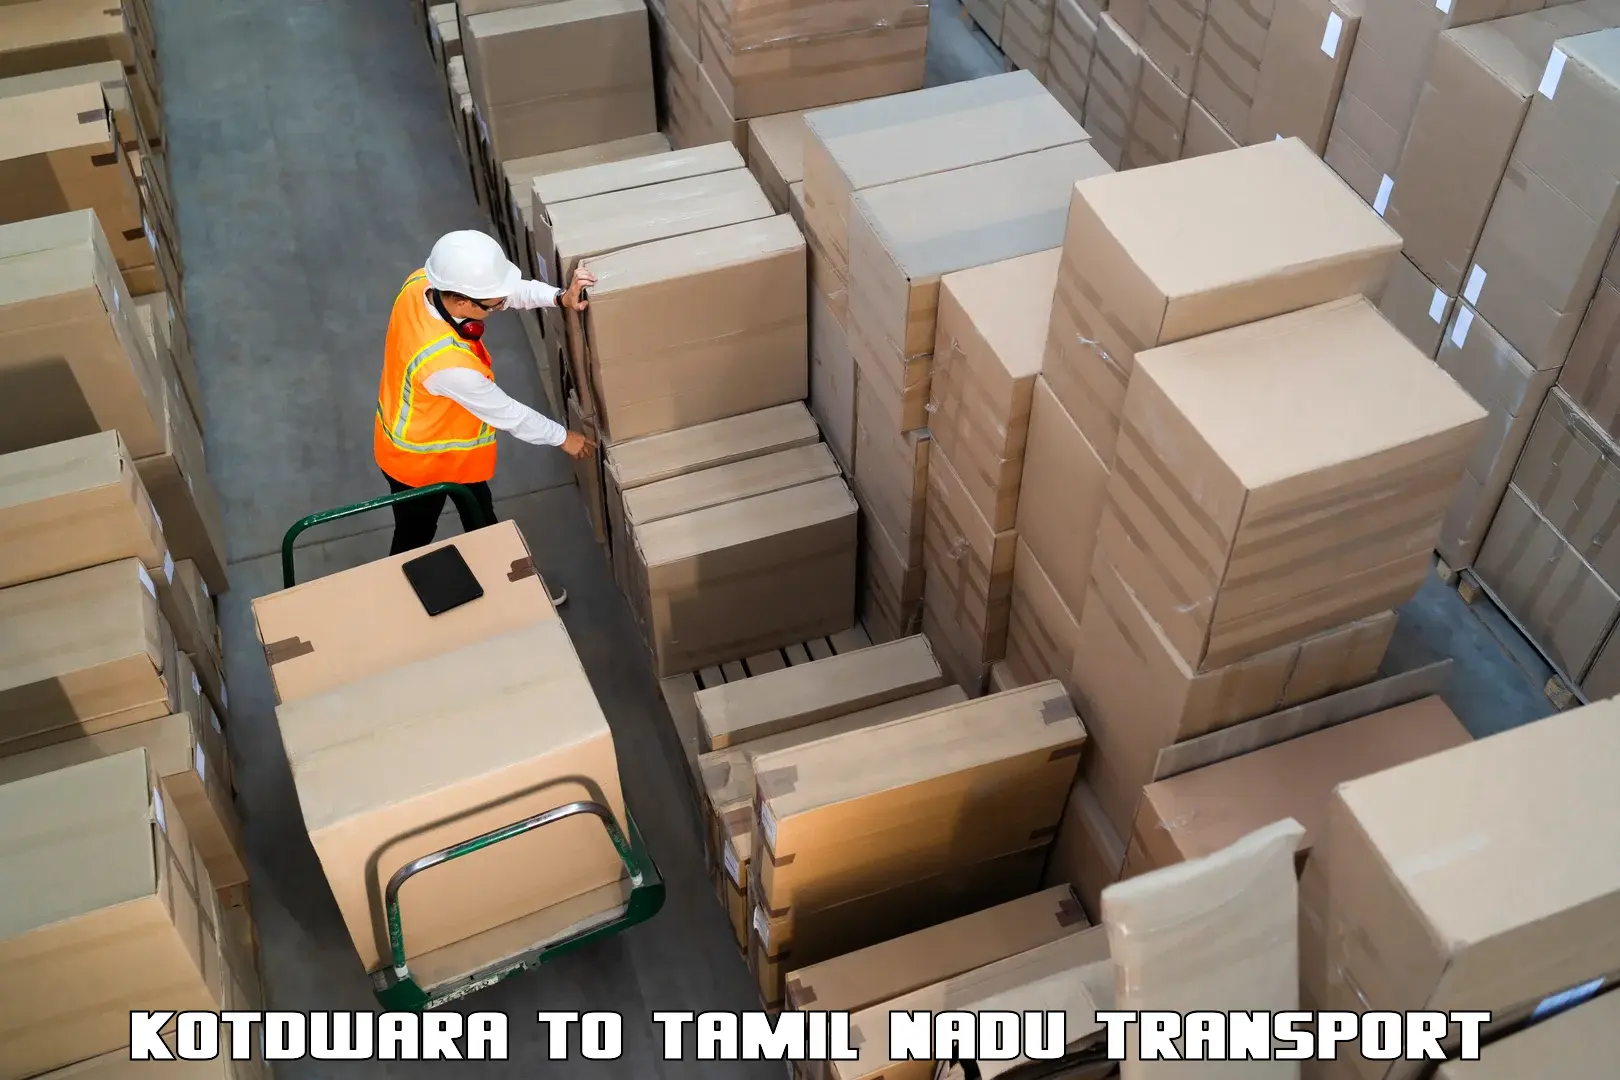 Land transport services Kotdwara to Madurai